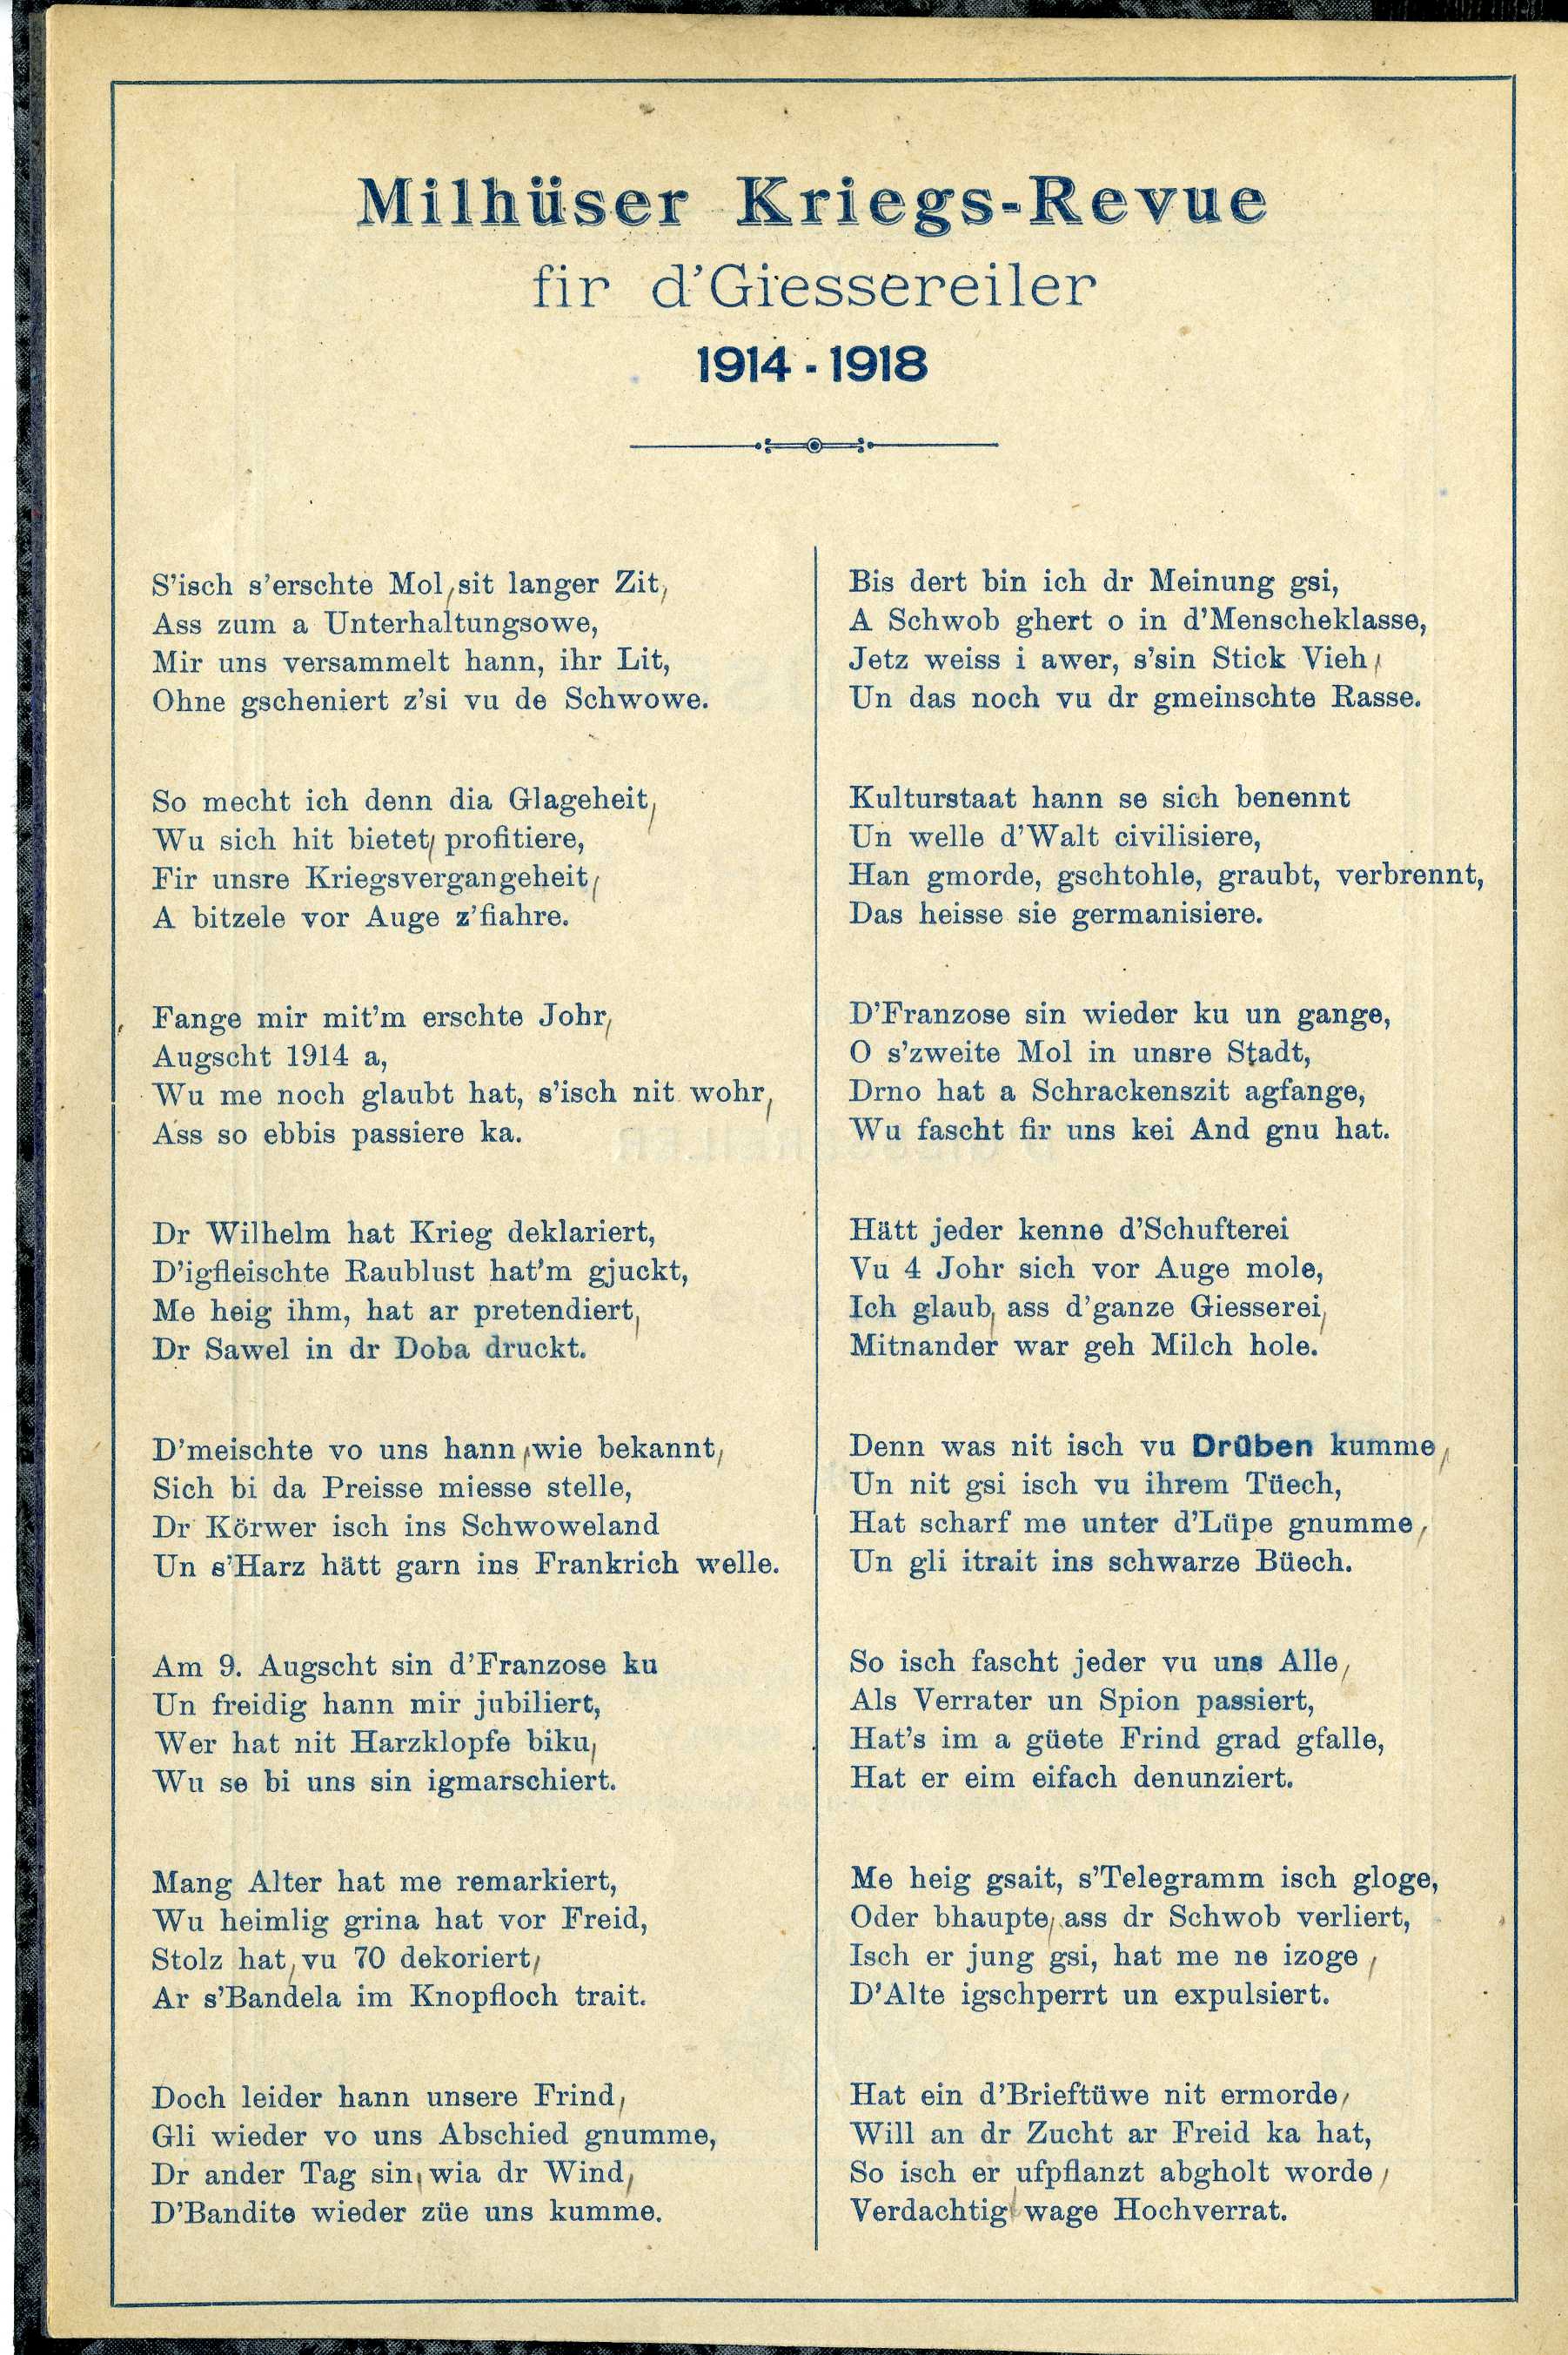 Première page de Milhüser Kriegs-Revue fir d'Giessereiler 1914-1918